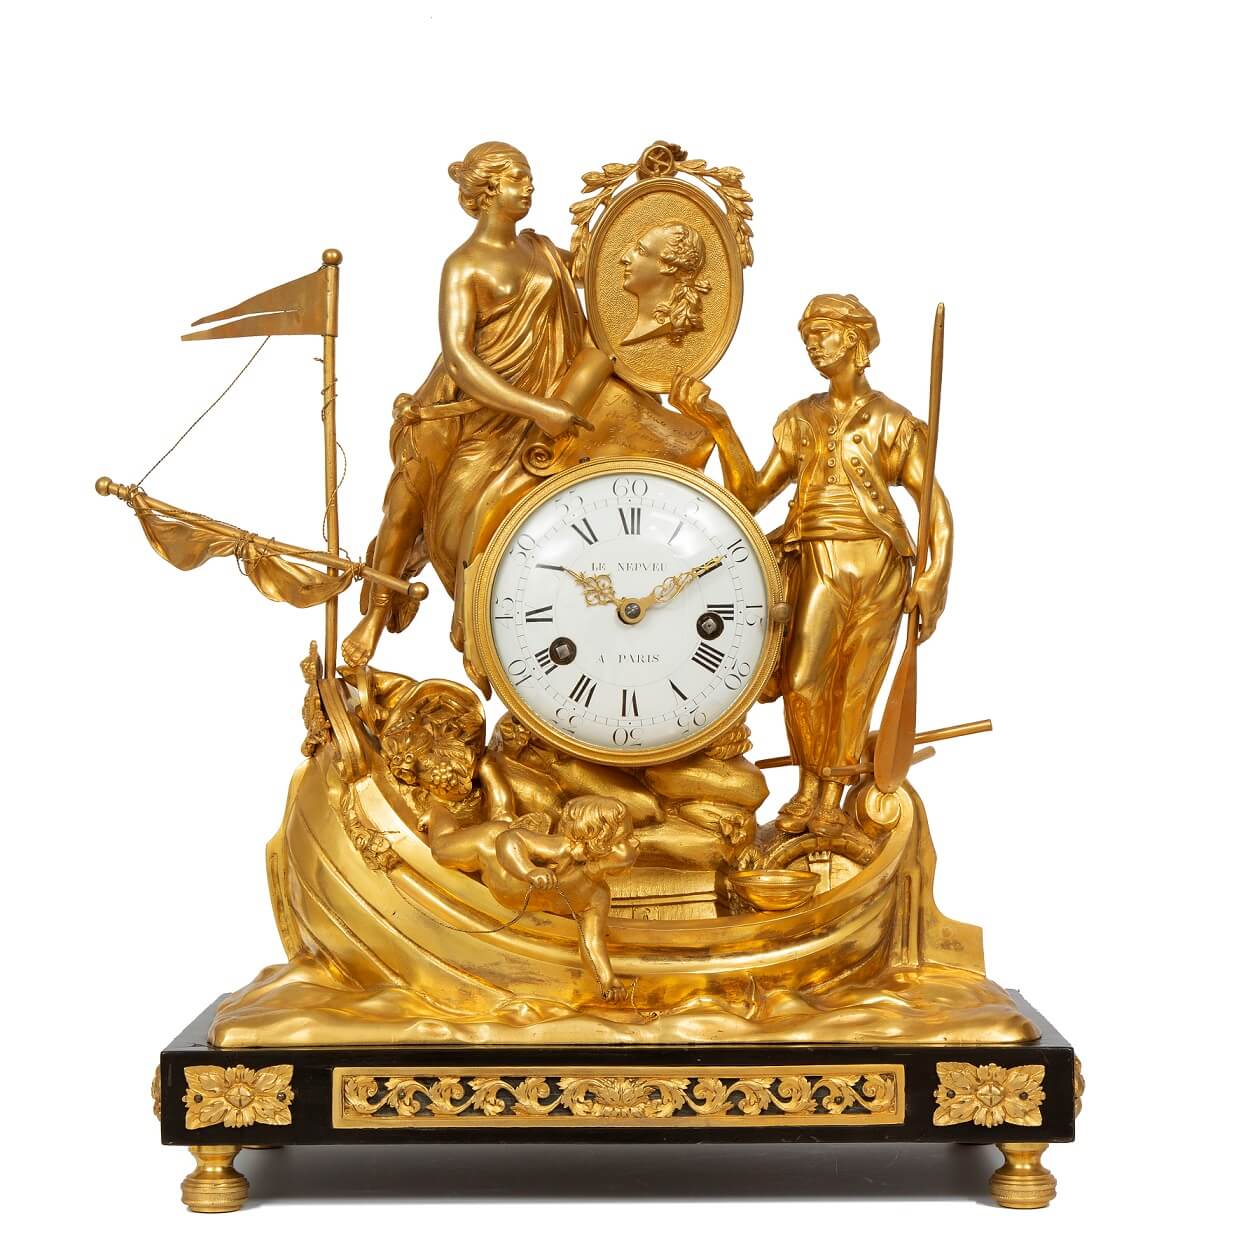 French-Louis XVI-ormolu-mantel clock-Corsaires-Le Nepveu-circa 1770